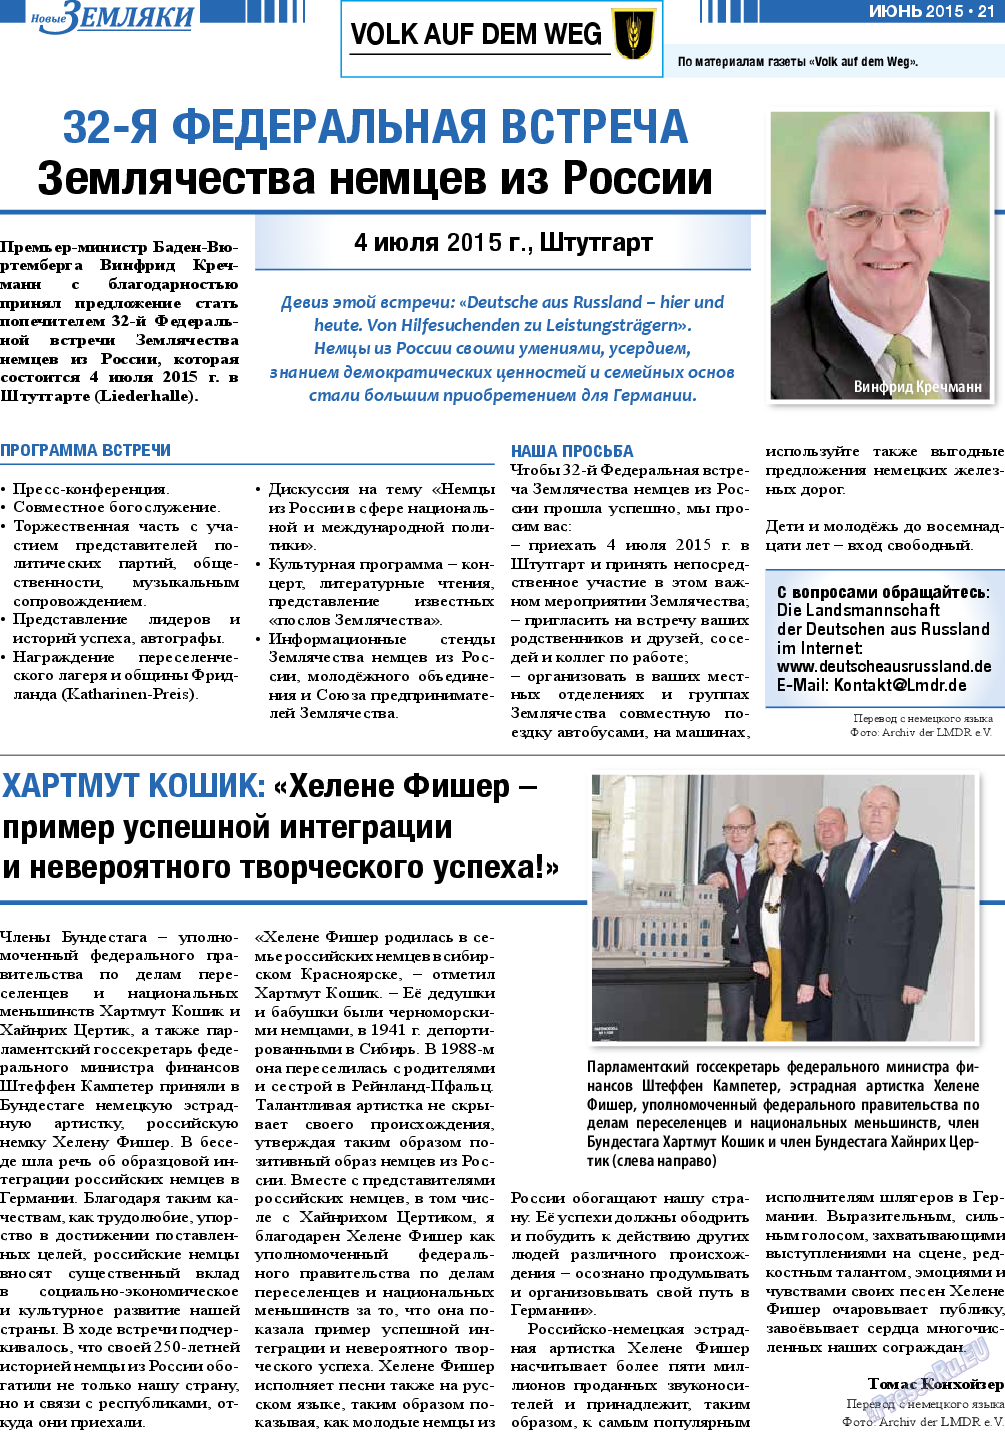 Новые Земляки, газета. 2015 №6 стр.21